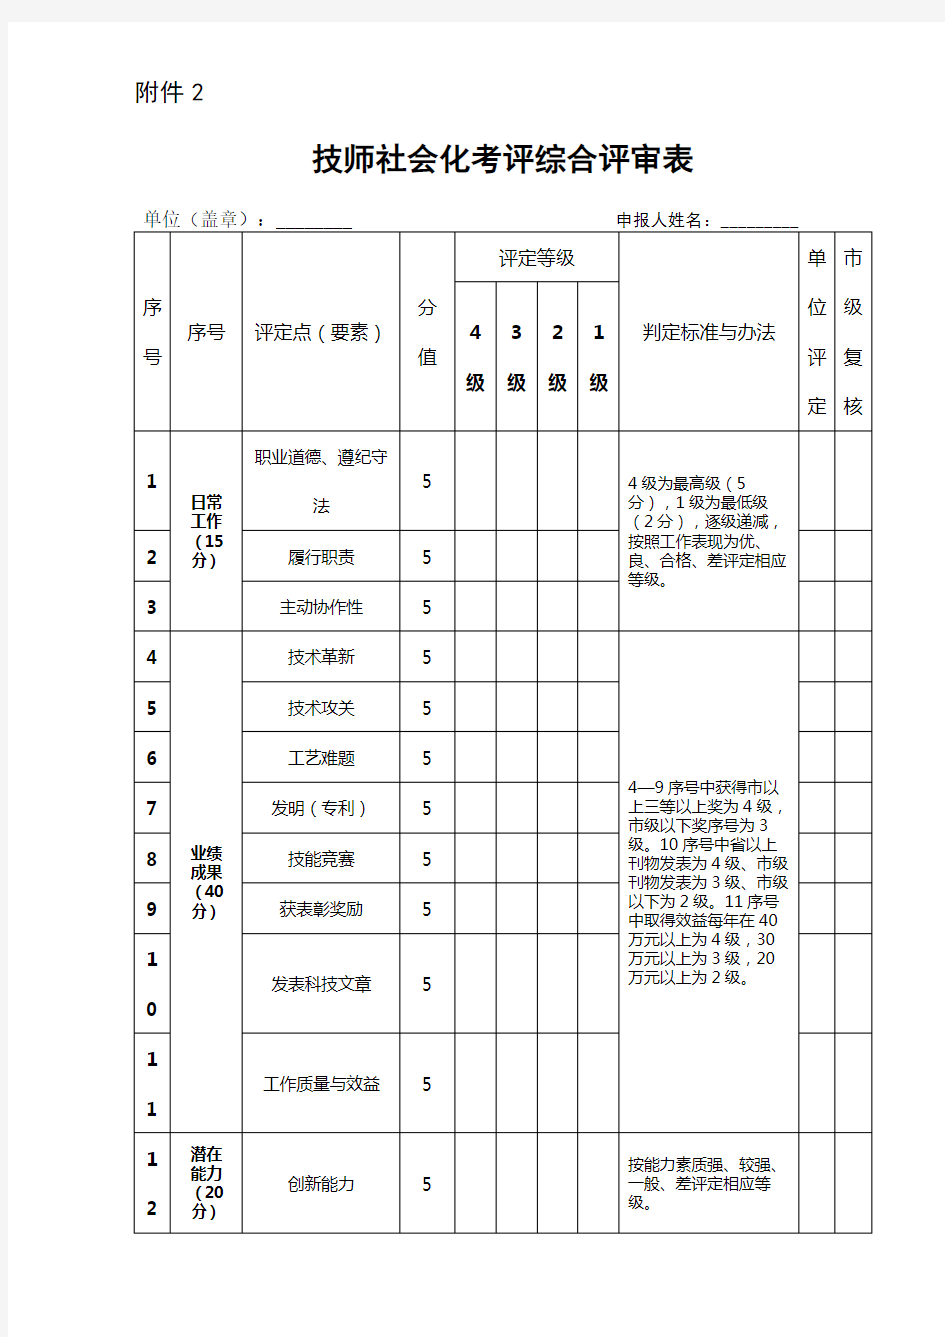 技师社会化考评综合评审表【模板】